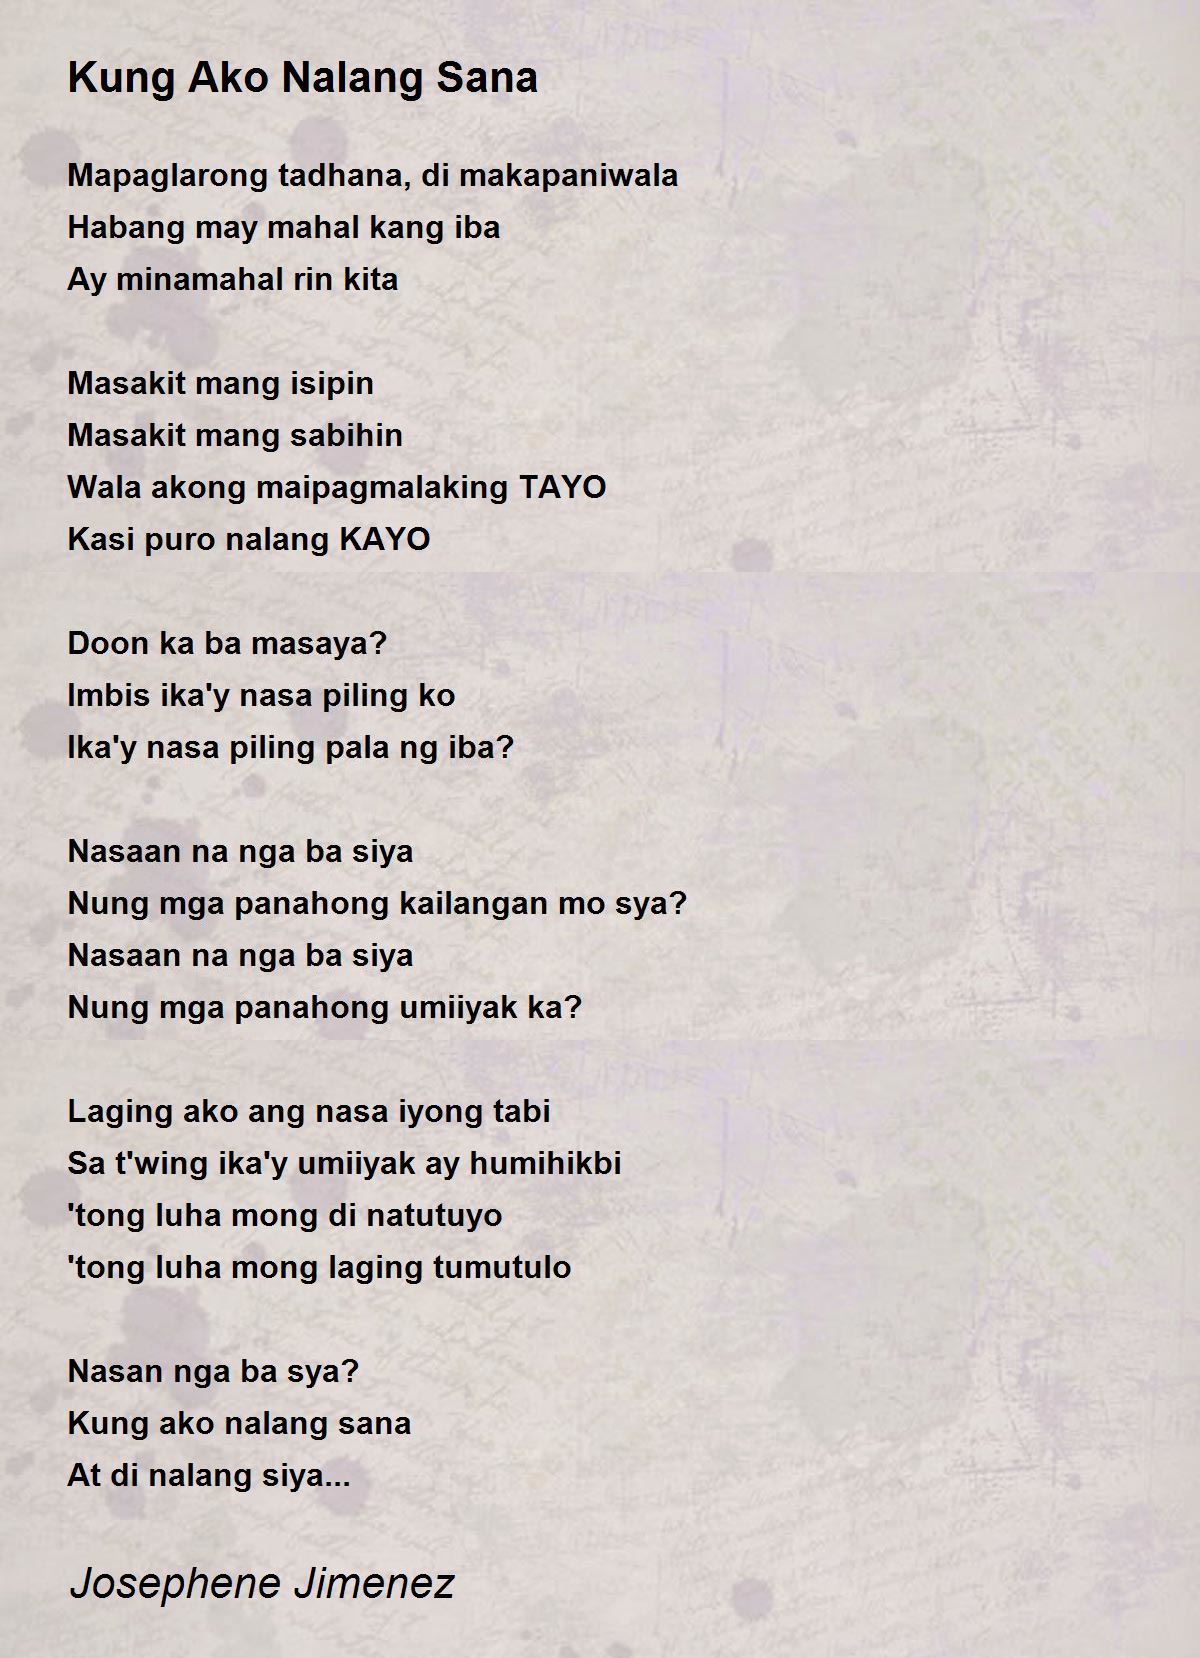 Kung Ako Nalang Sana Poem by Josephene Jimenez - Poem Hunter